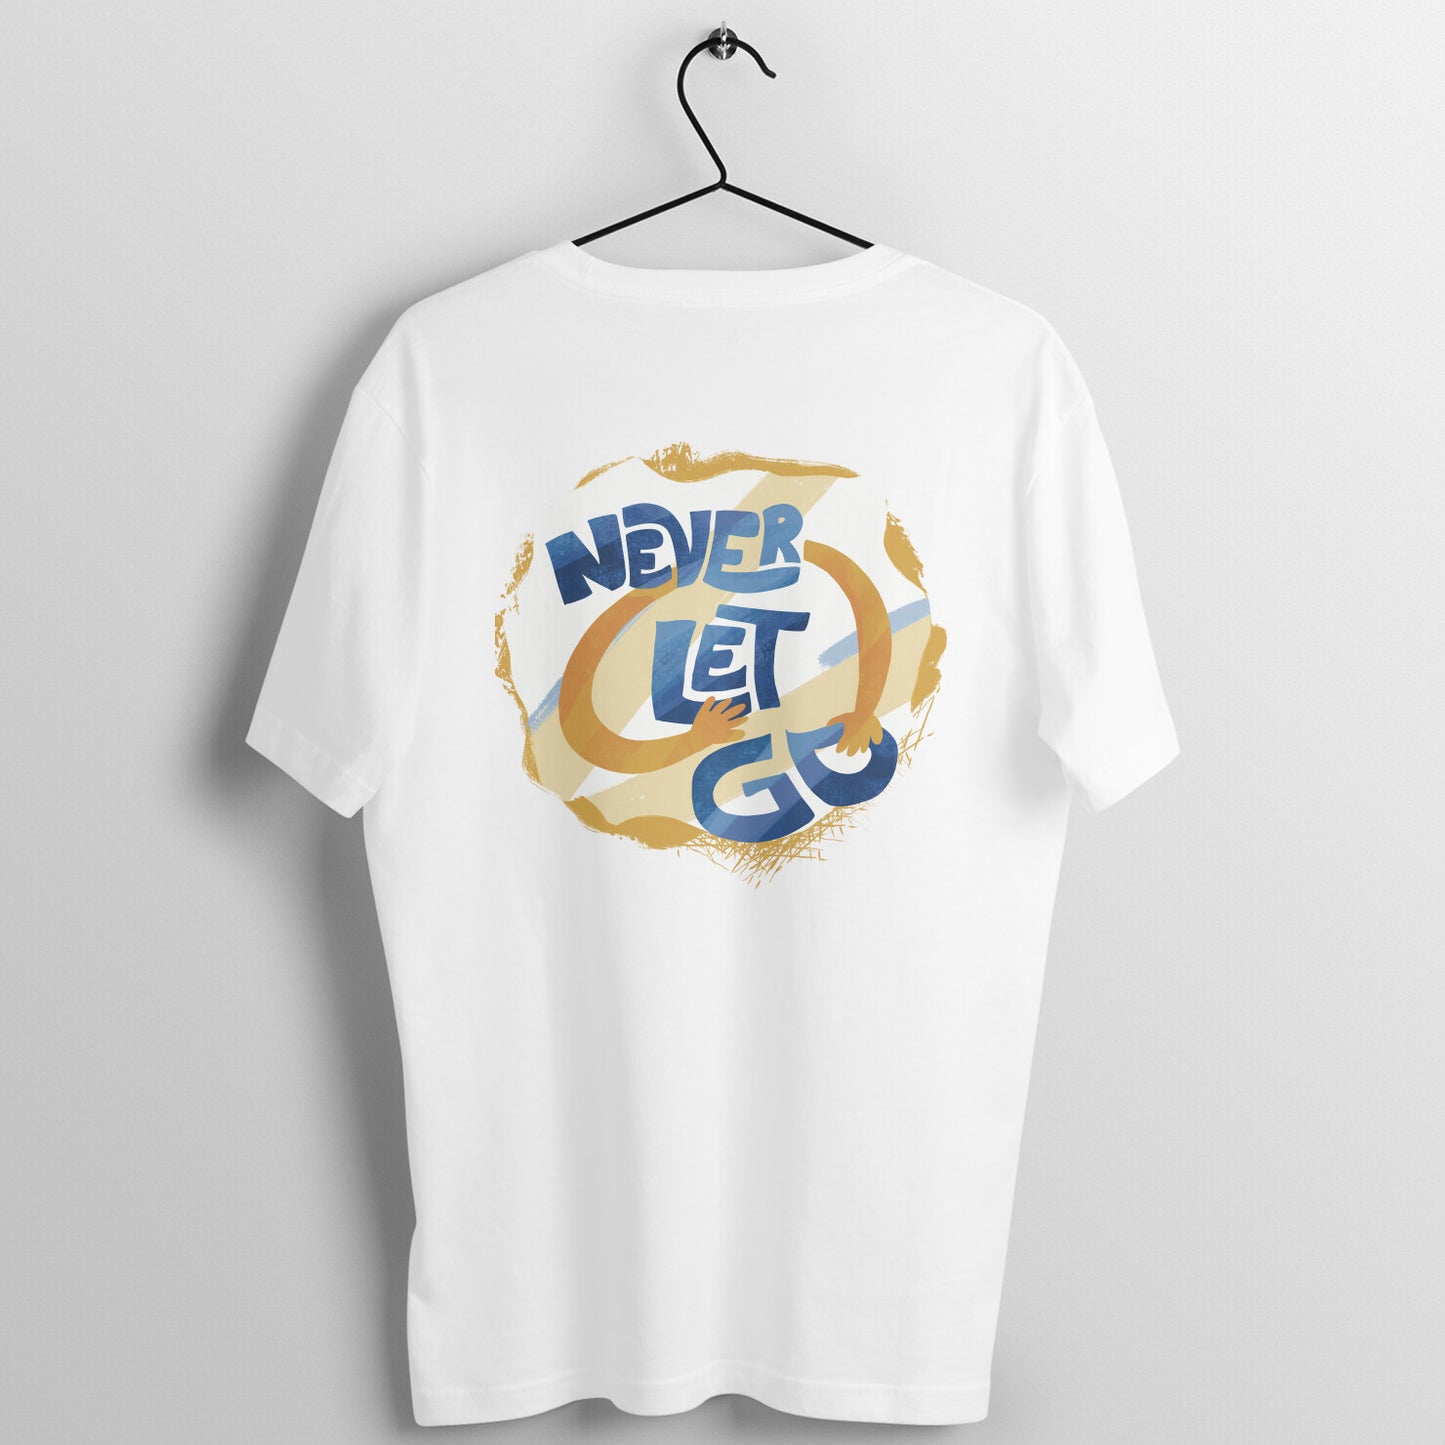 Never Let Go (JK FESTA Song) - Tee (Unisex) (Back Print)